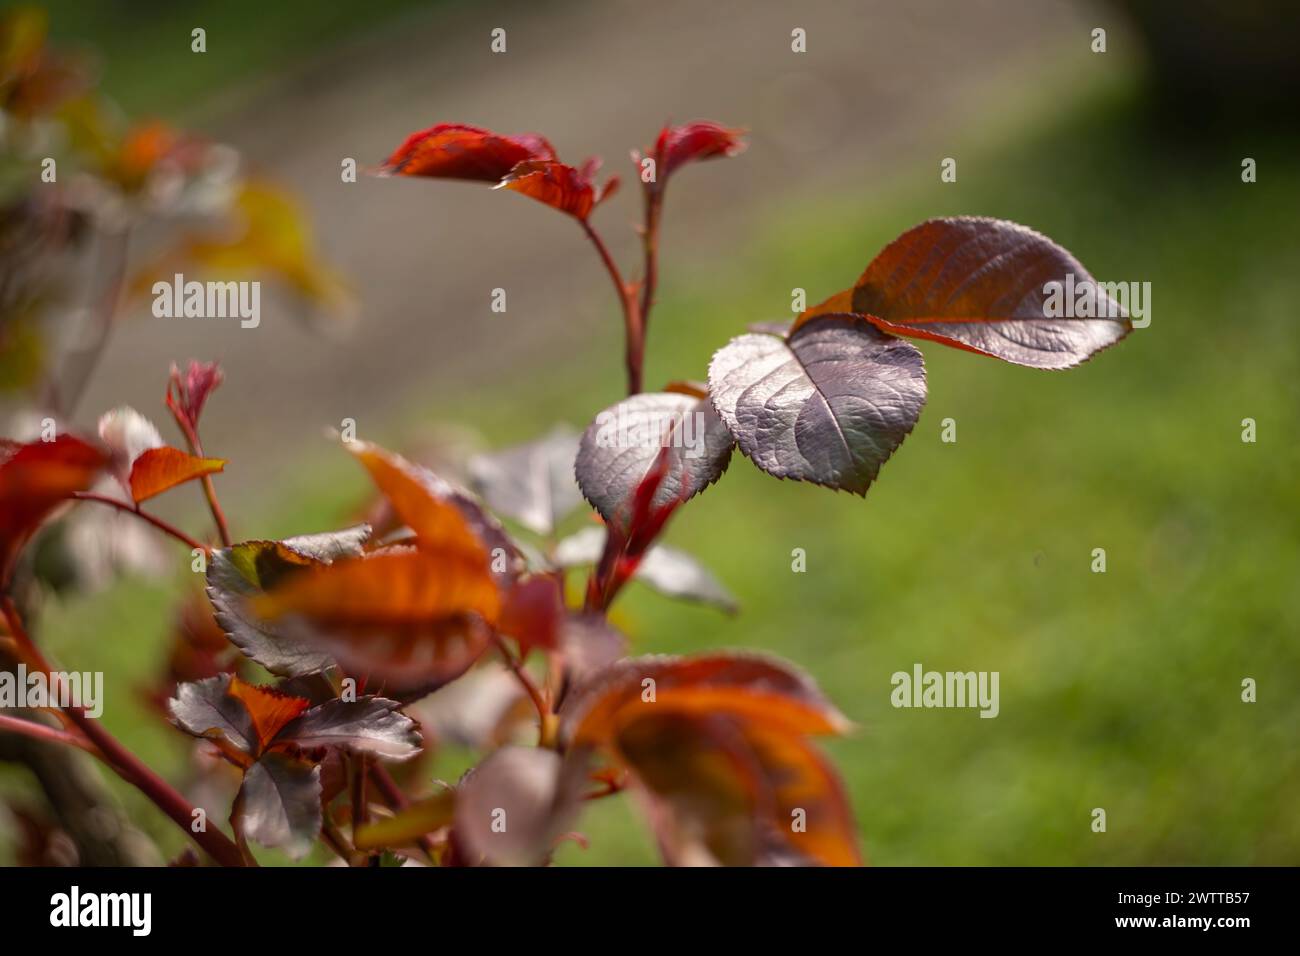 Vue détaillée d'une plante aux feuilles rouges et blanches éclatantes, mettant en valeur ses couleurs et textures uniques. Banque D'Images